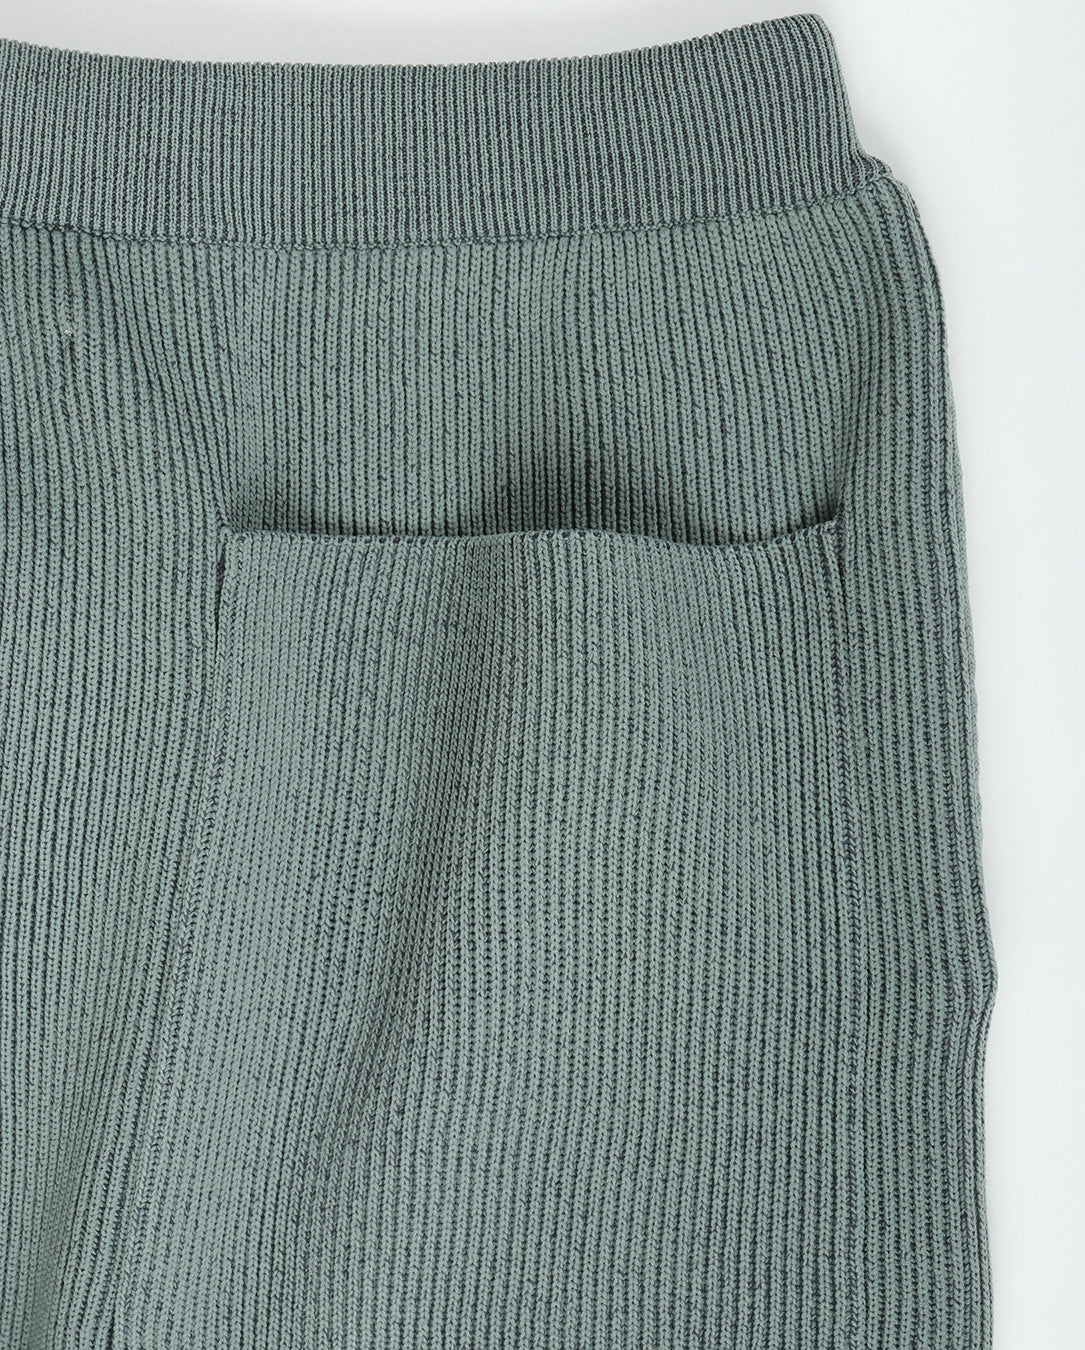 Ridge Knit Pants gray 